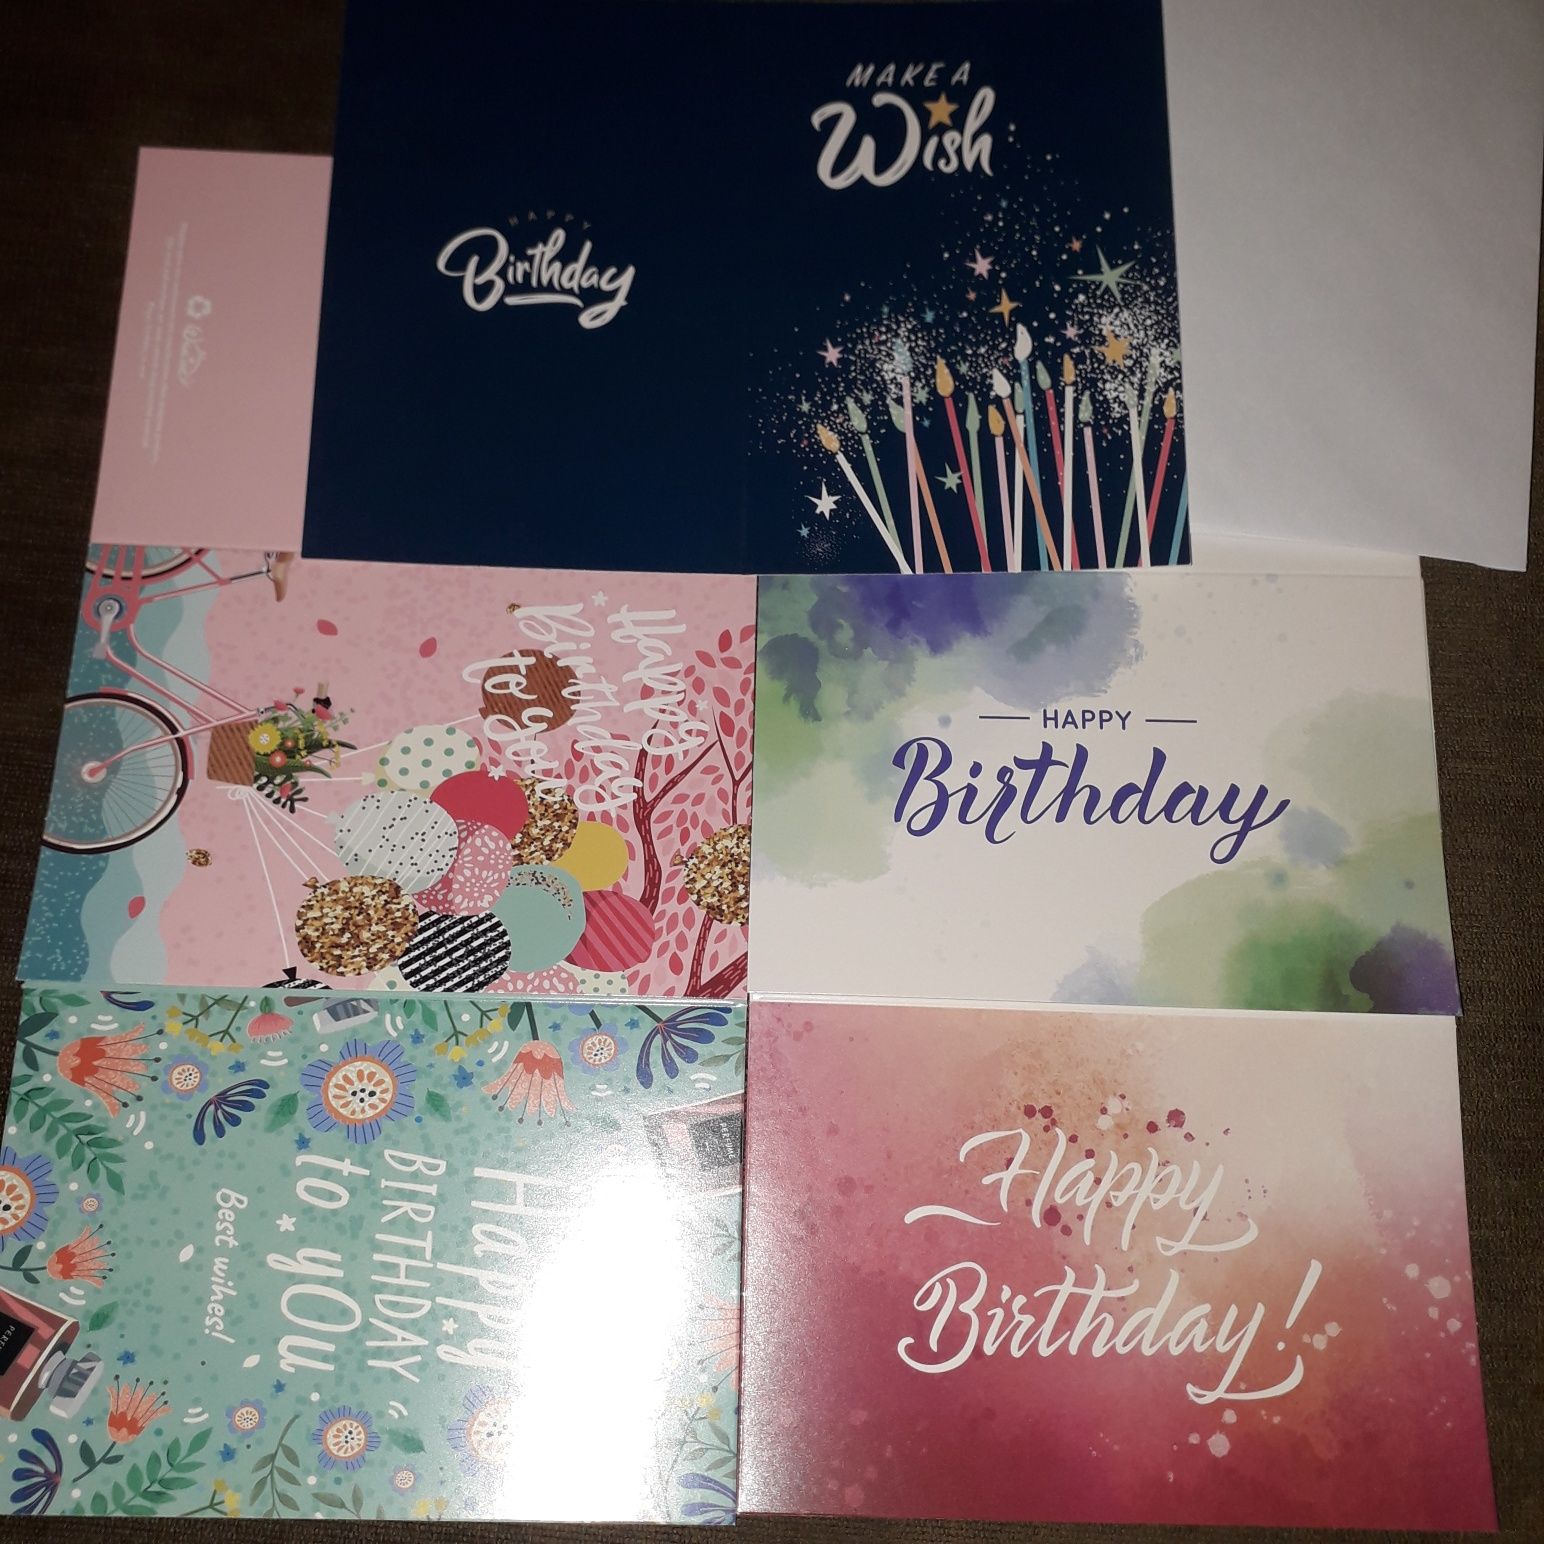 Kartki urodzinowe pięć sztuk plus koperty